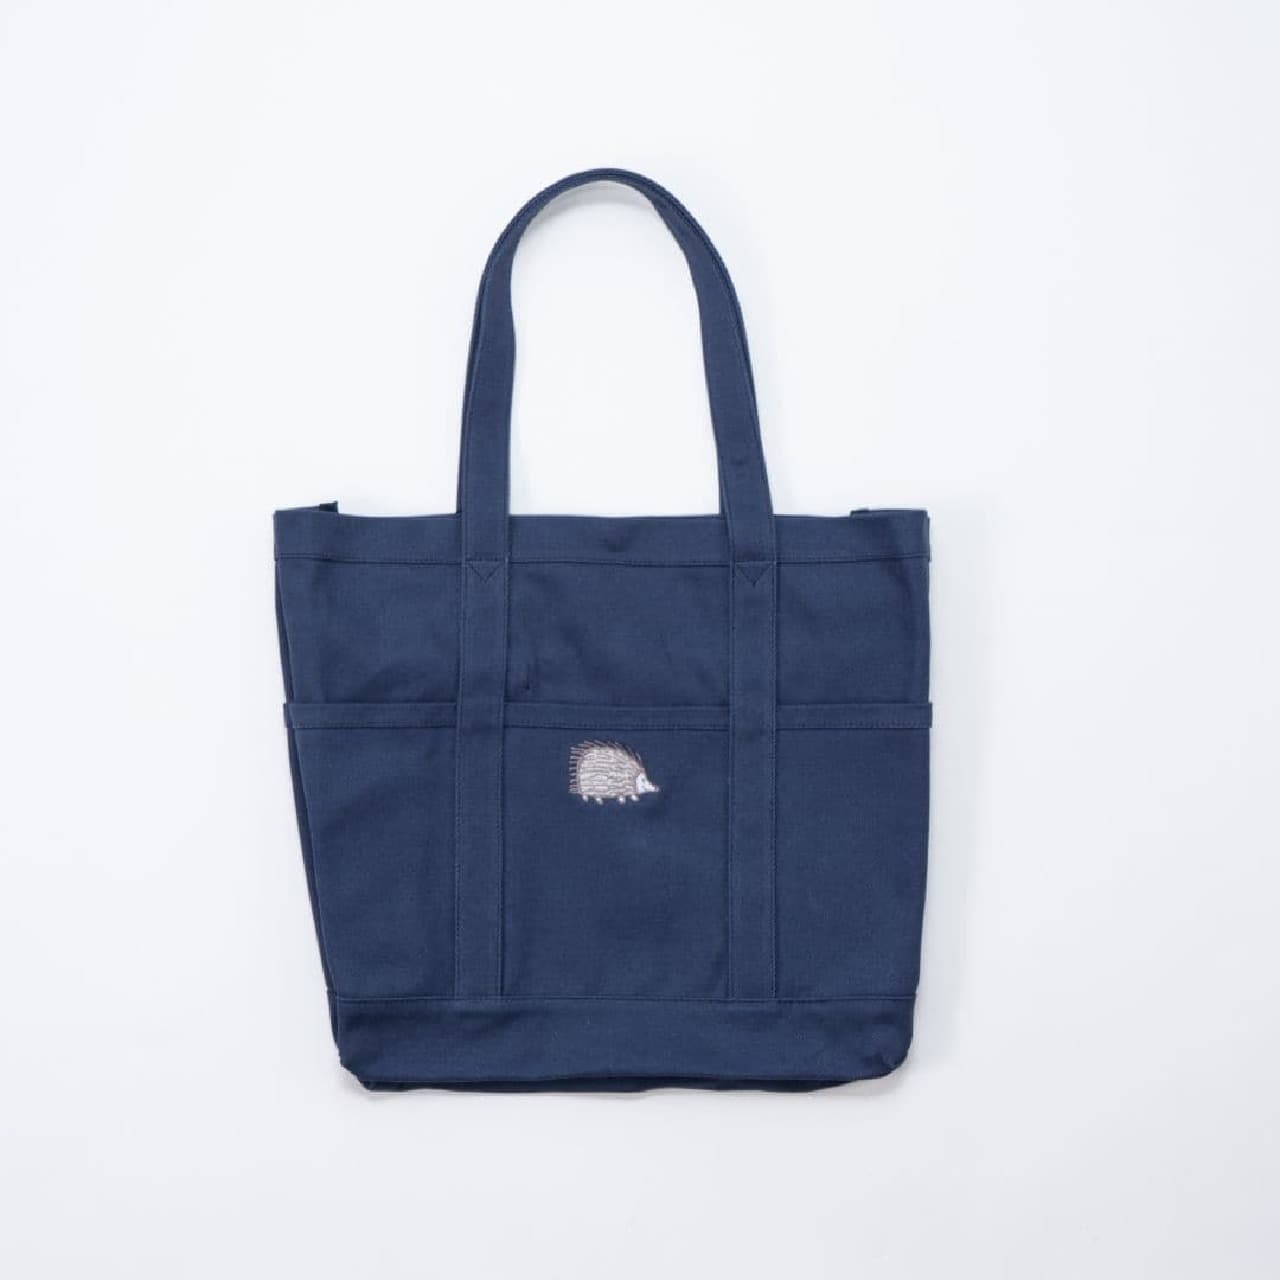 Lisa Larson's hedgehog design "Tote bag M (hedgehog)